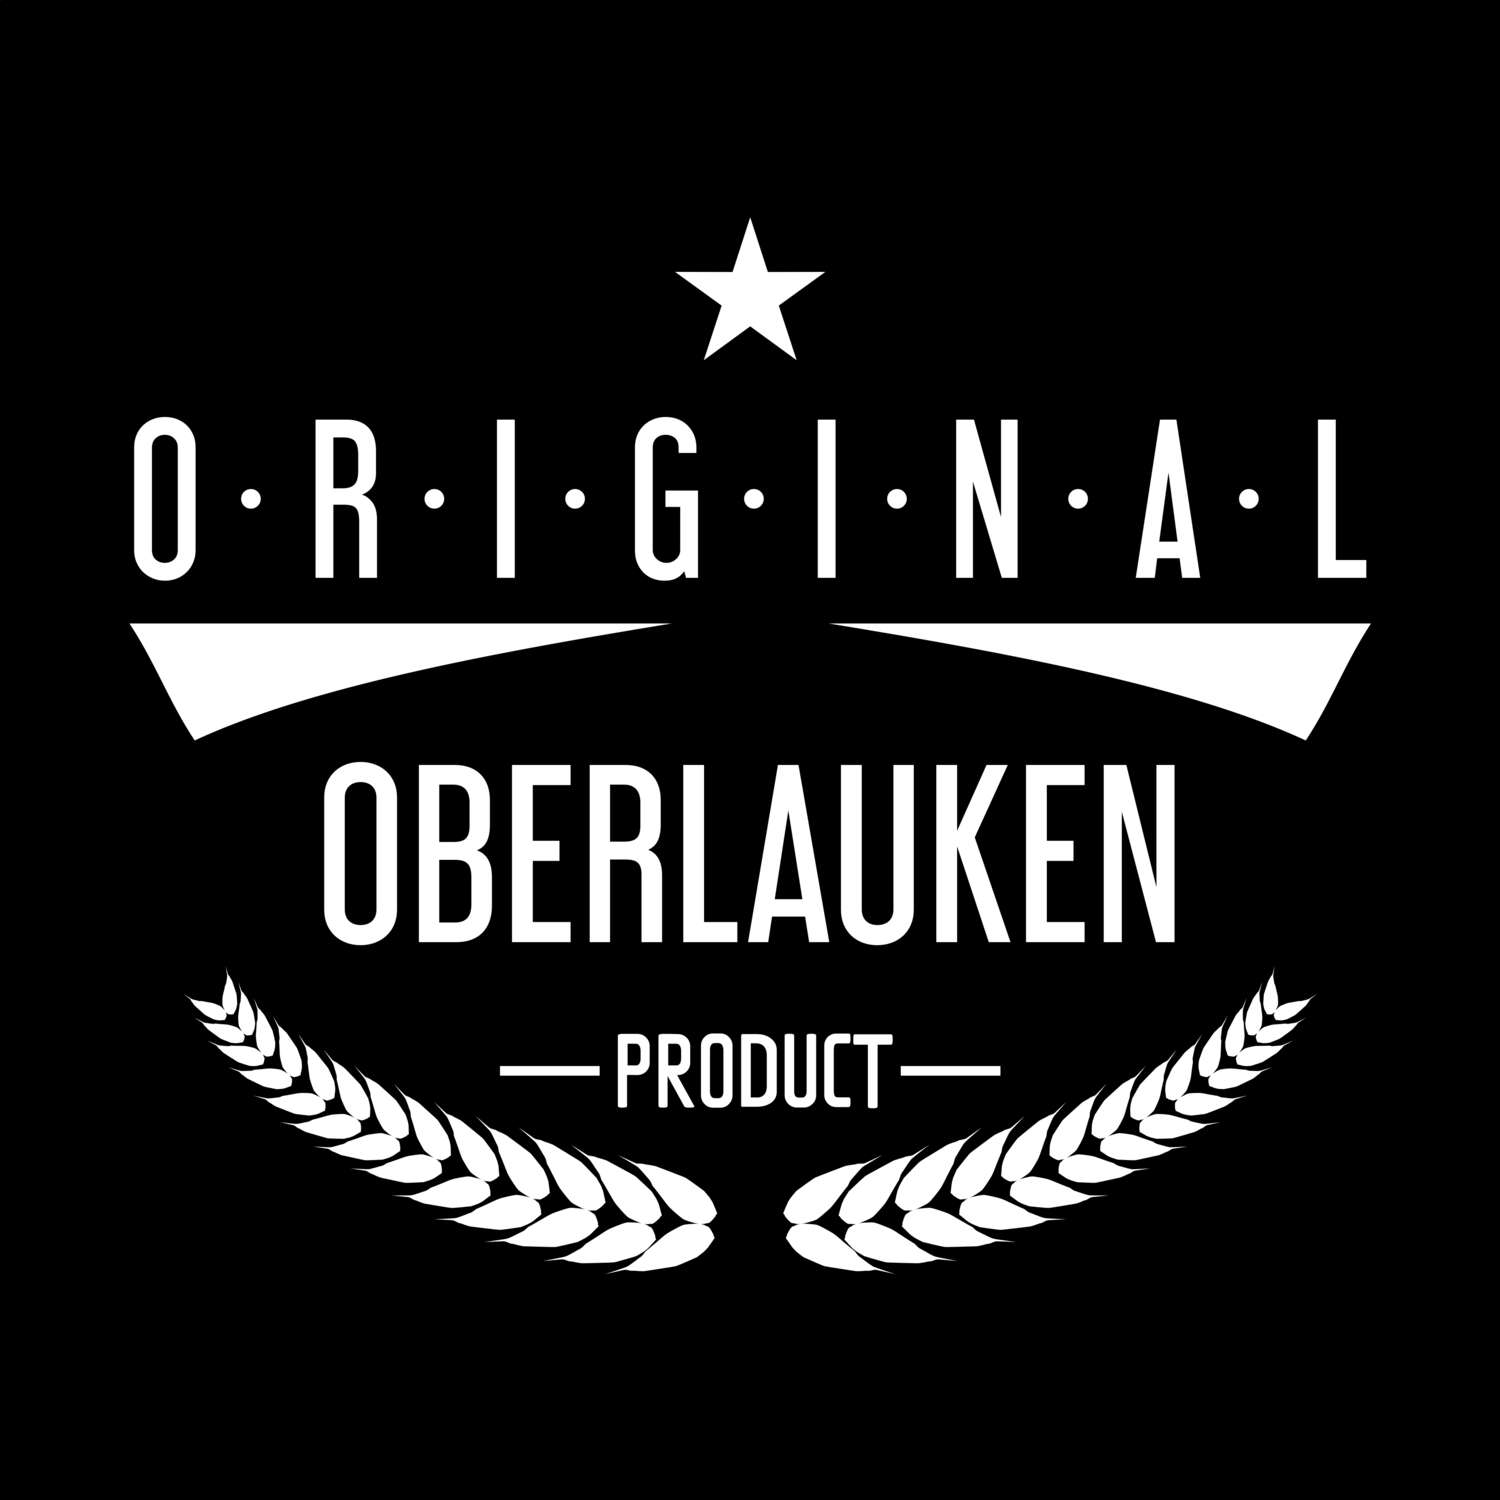 Oberlauken T-Shirt »Original Product«